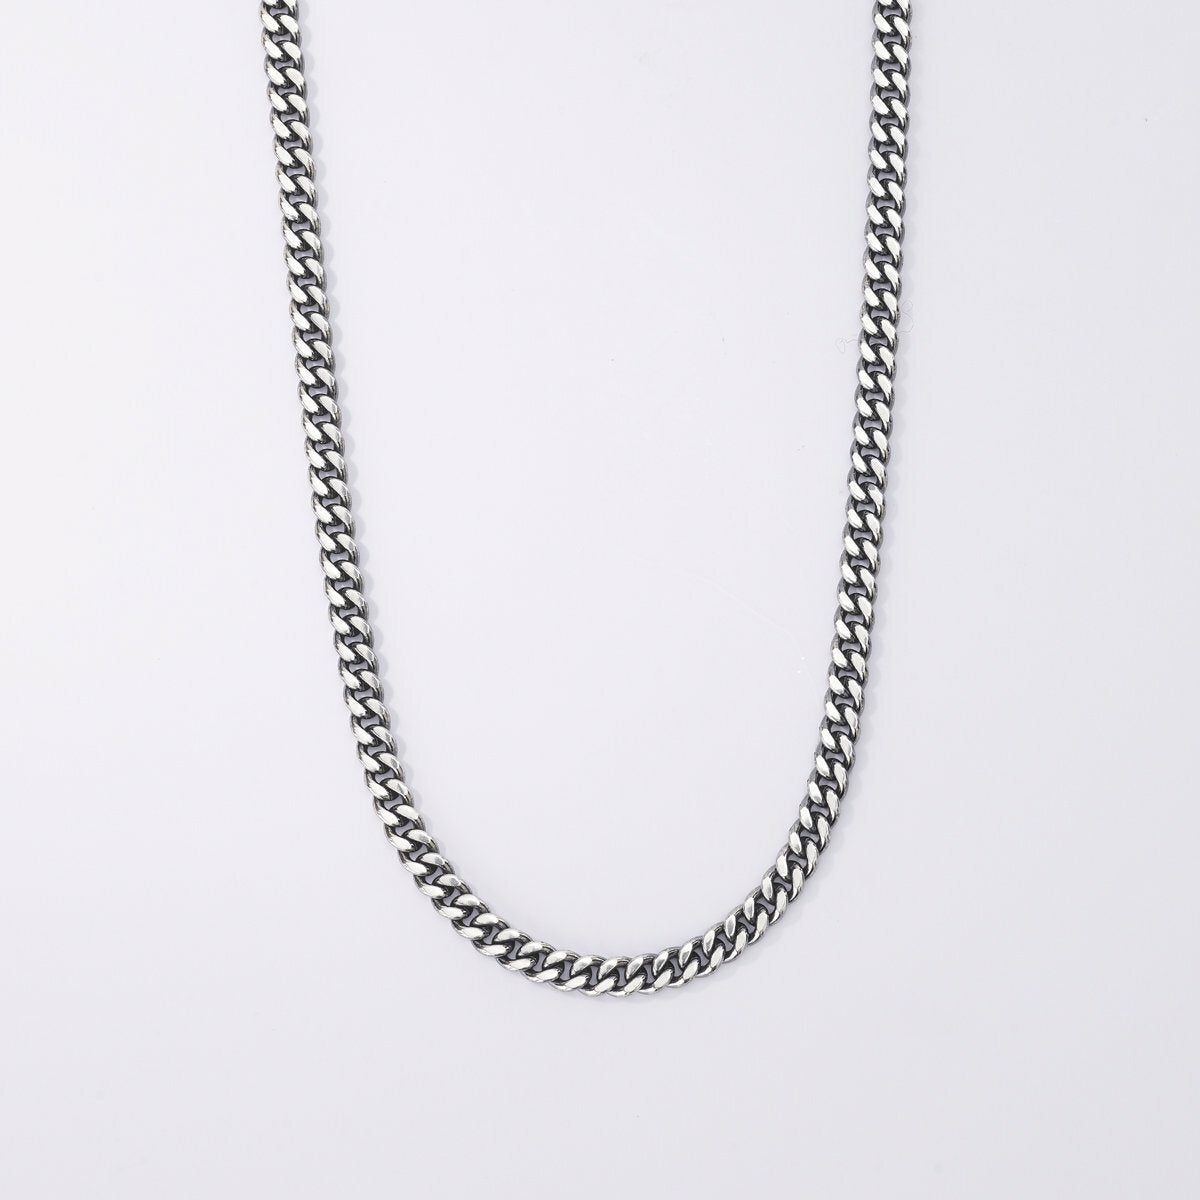 Men's necklace in silver Mabina Gioielli 553376